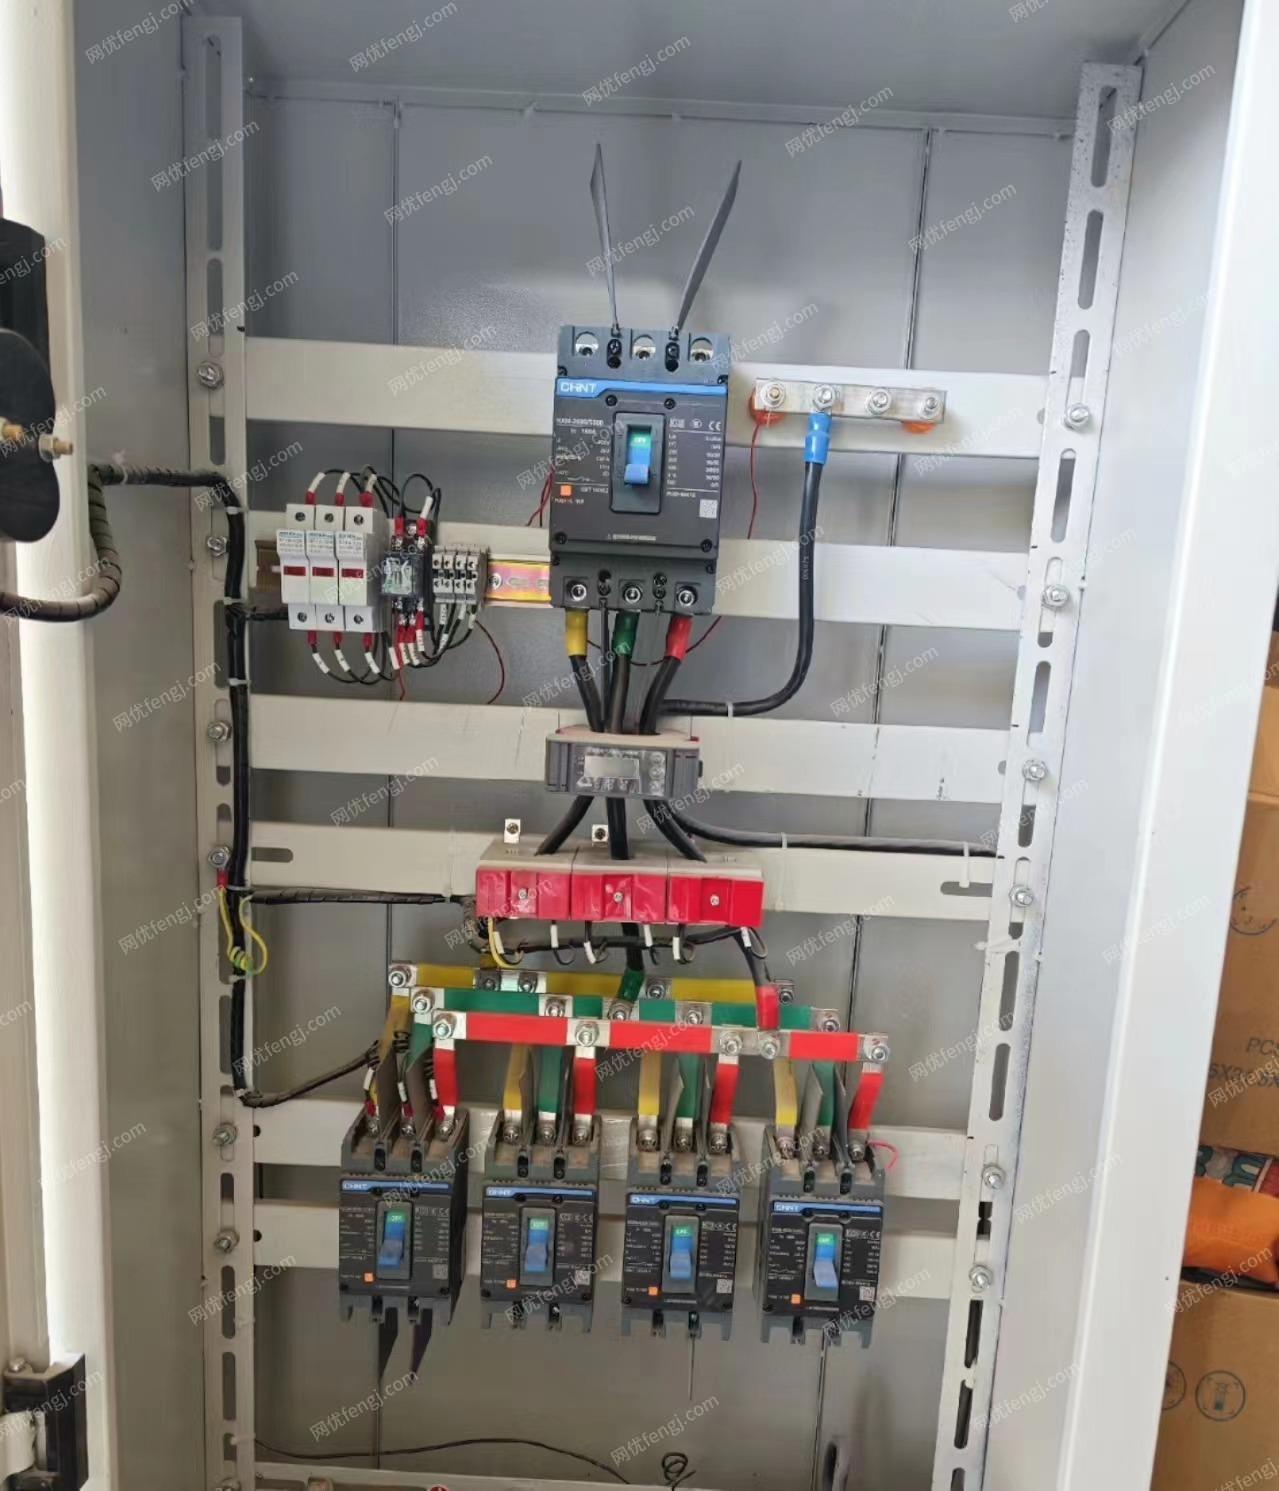 浙江湖州厂房改造三个动力配电柜、两个应急照明处理